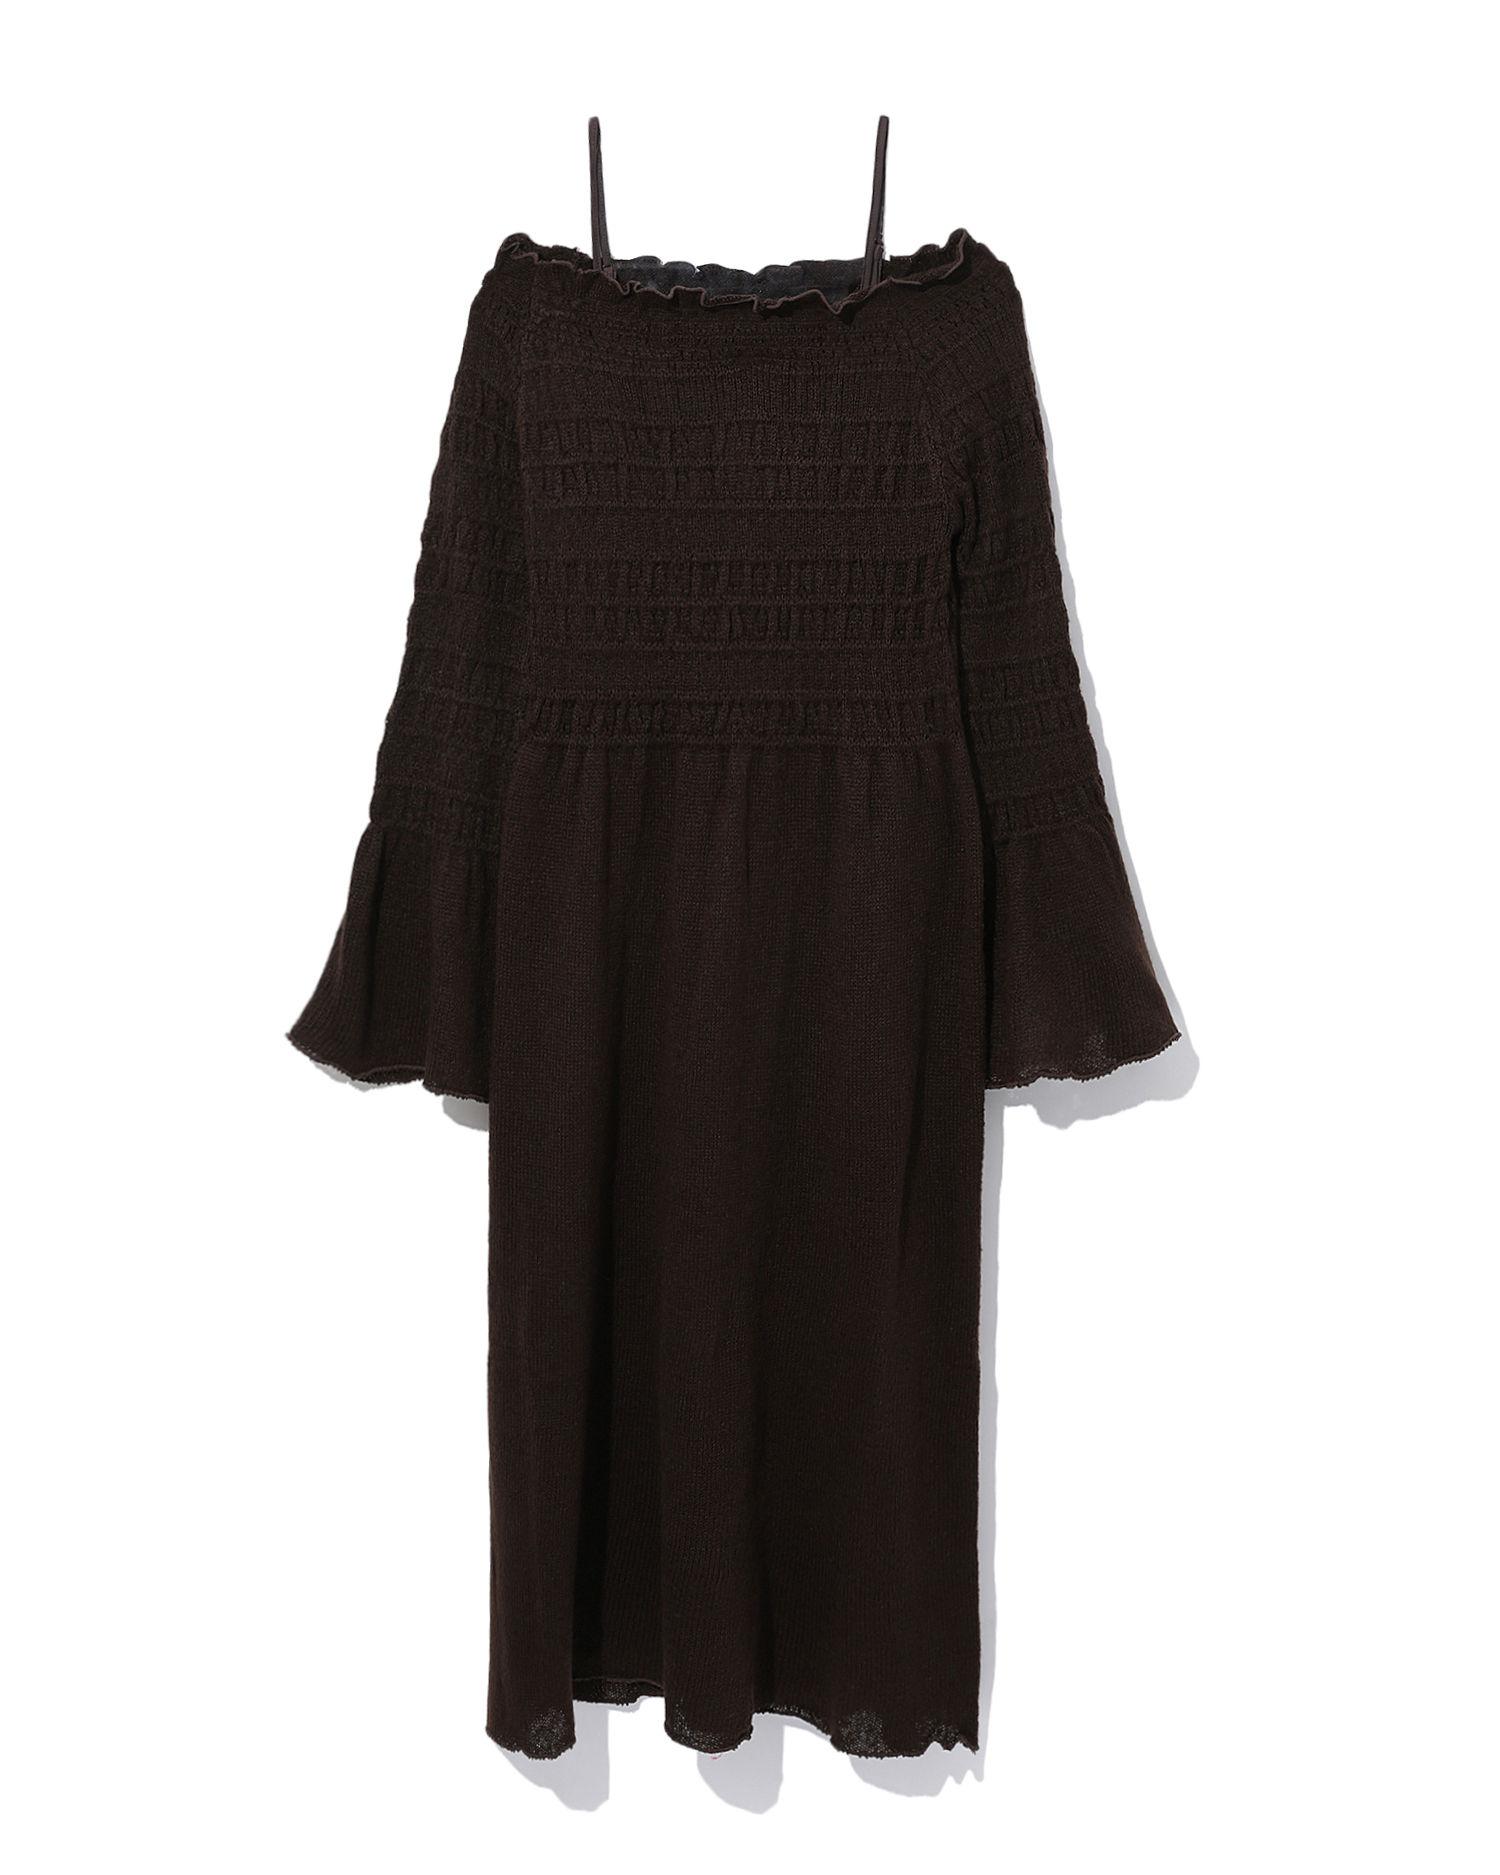 Two-piece knit dress by DAZZLIN